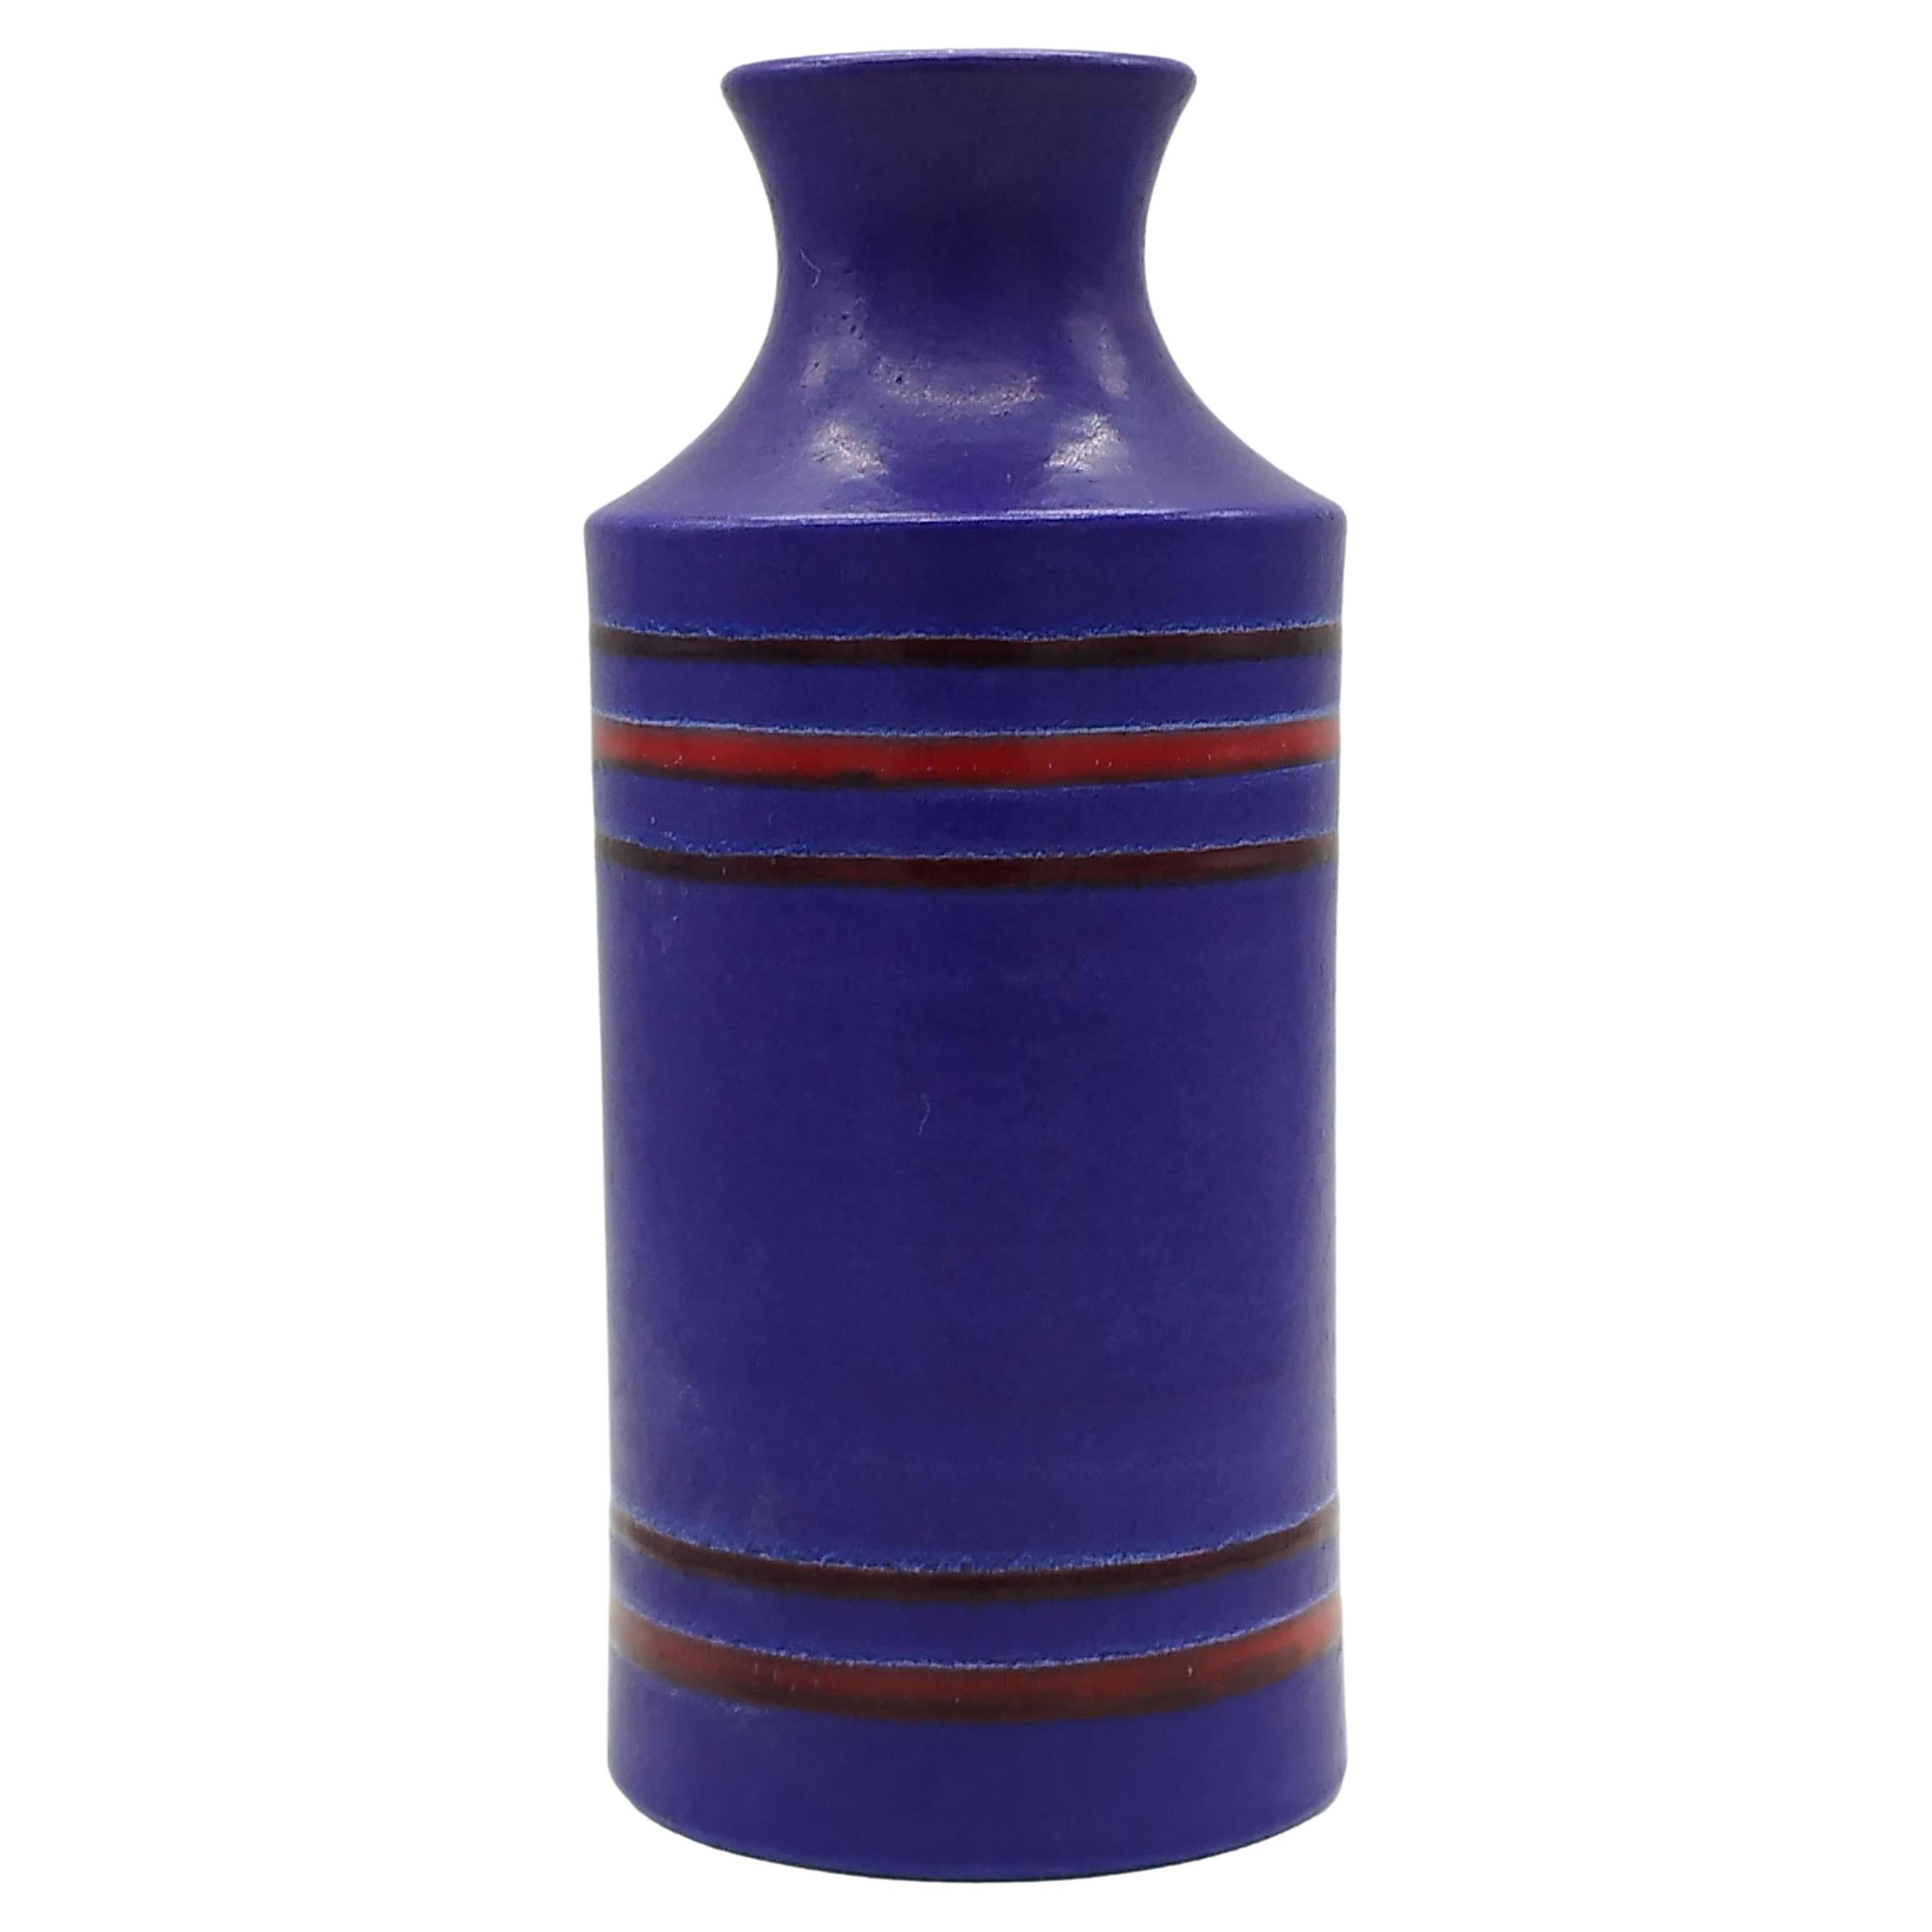 Aldo Londi for Bitossi Glazed Purple Ceramic Vase, Italy 1960s For Sale